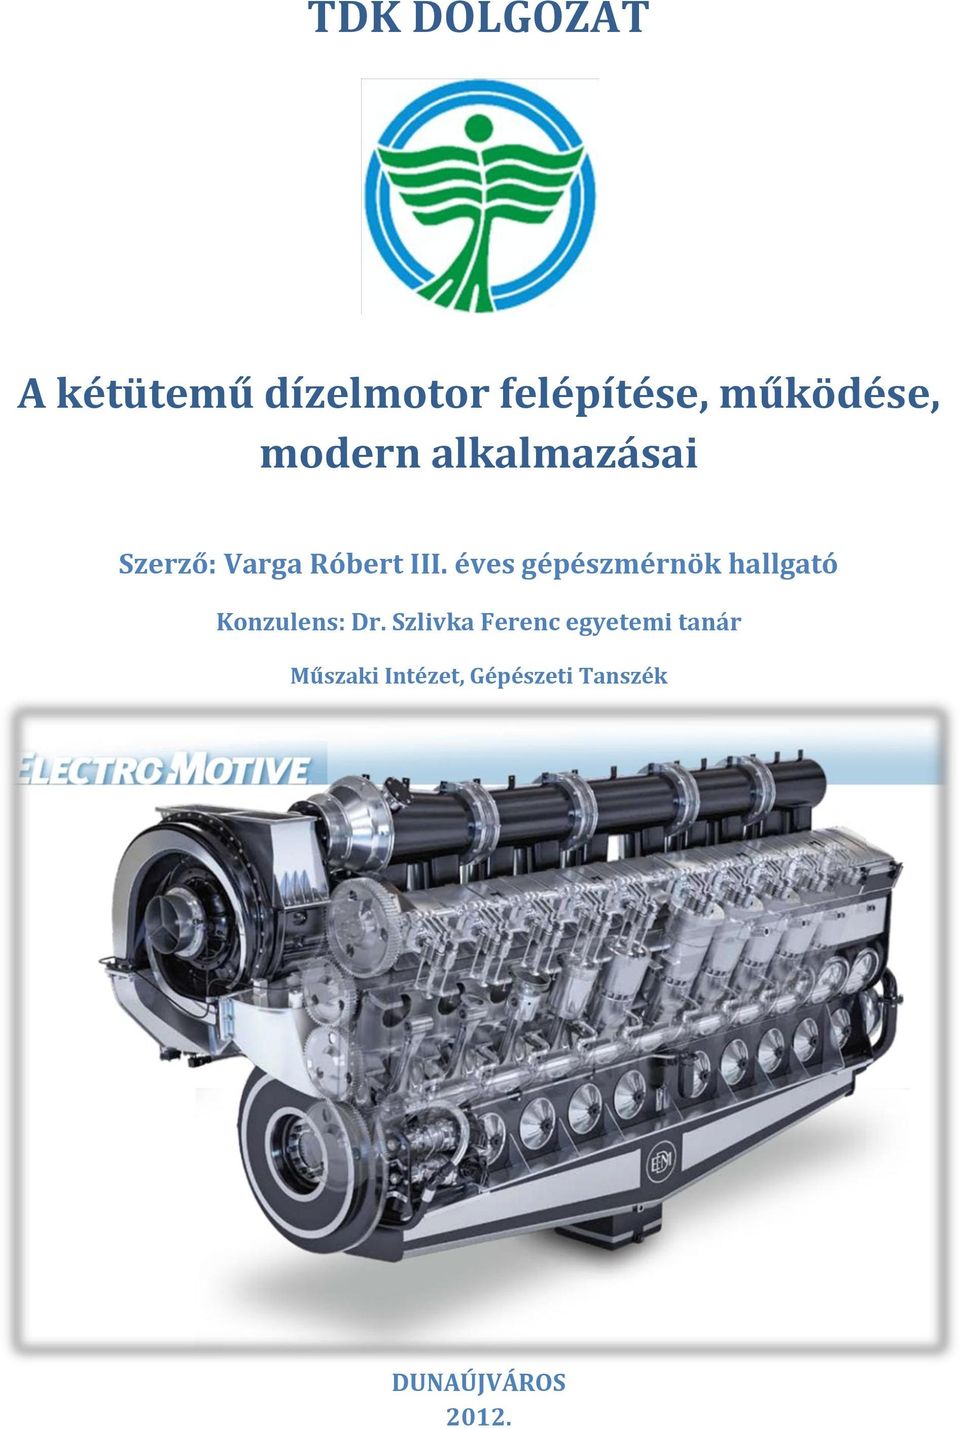 TDK DOLGOZAT. A kétütemű dízelmotor felépítése, működése, modern  alkalmazásai. Szerző: Varga Róbert III. éves gépészmérnök hallgató - PDF  Free Download